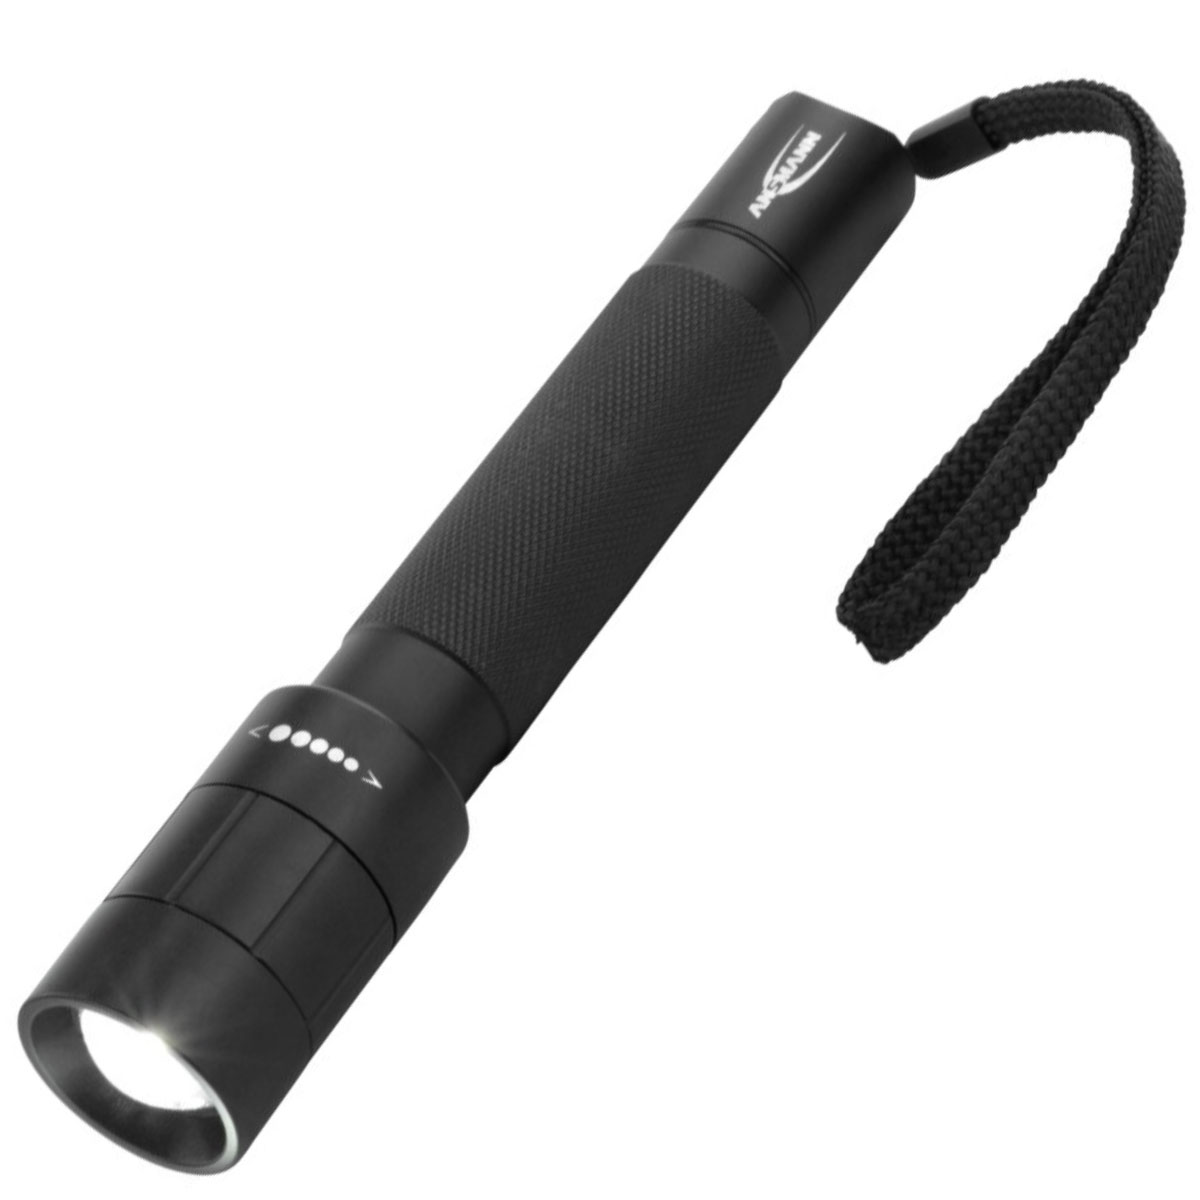 Ansmann professionelle Taschenlampe 5W-LED mit stufen- sowie endloser Fokussierung, inklusive 2 Mignon AA Batterien, abnehmbarem Halteclip und Handschlaufe